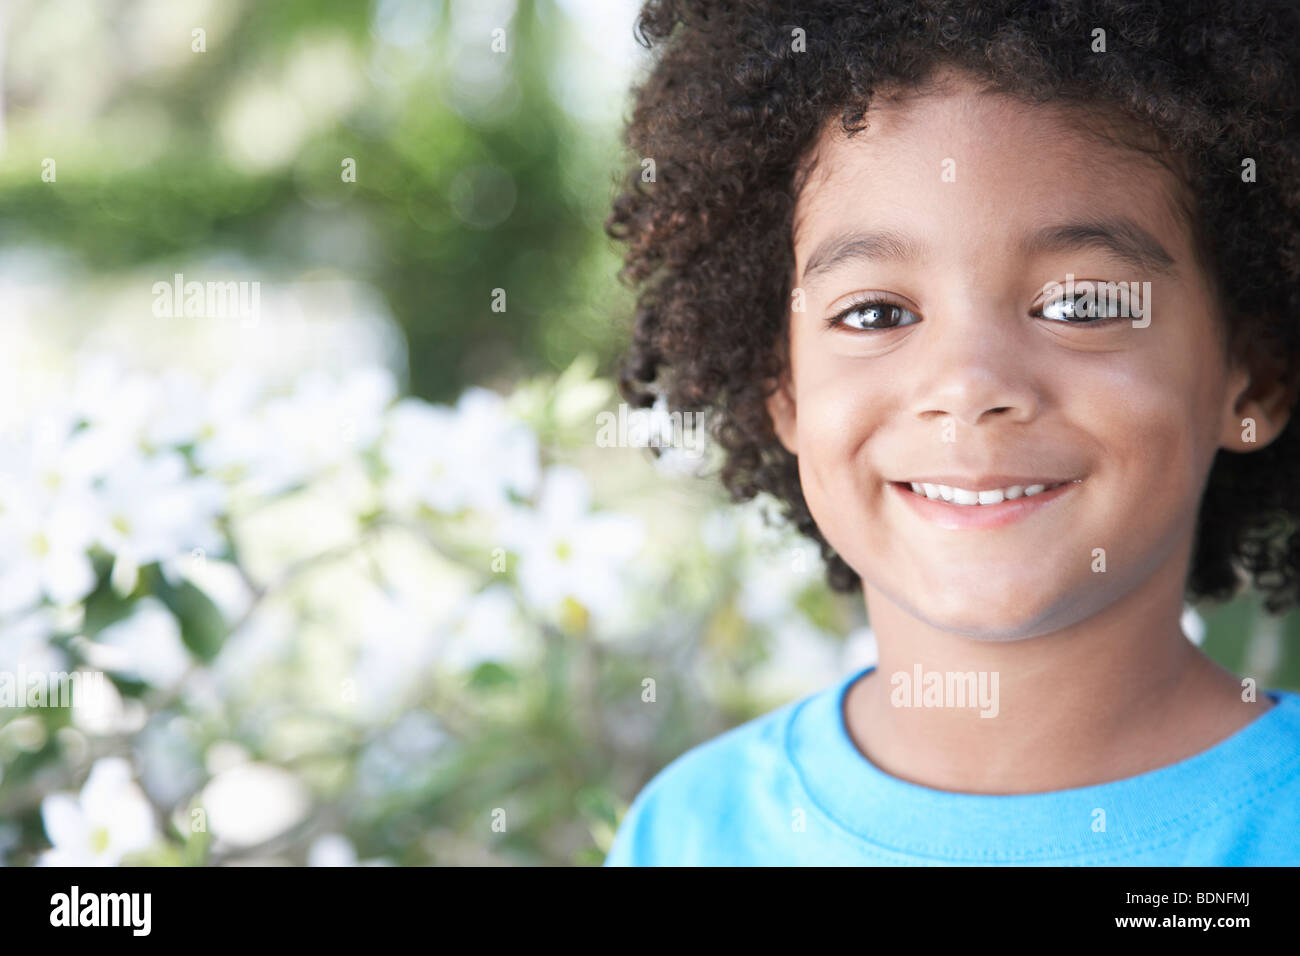 Ragazzo (5-6 anni) sorridente all'aperto, ritratto, close-up Foto Stock